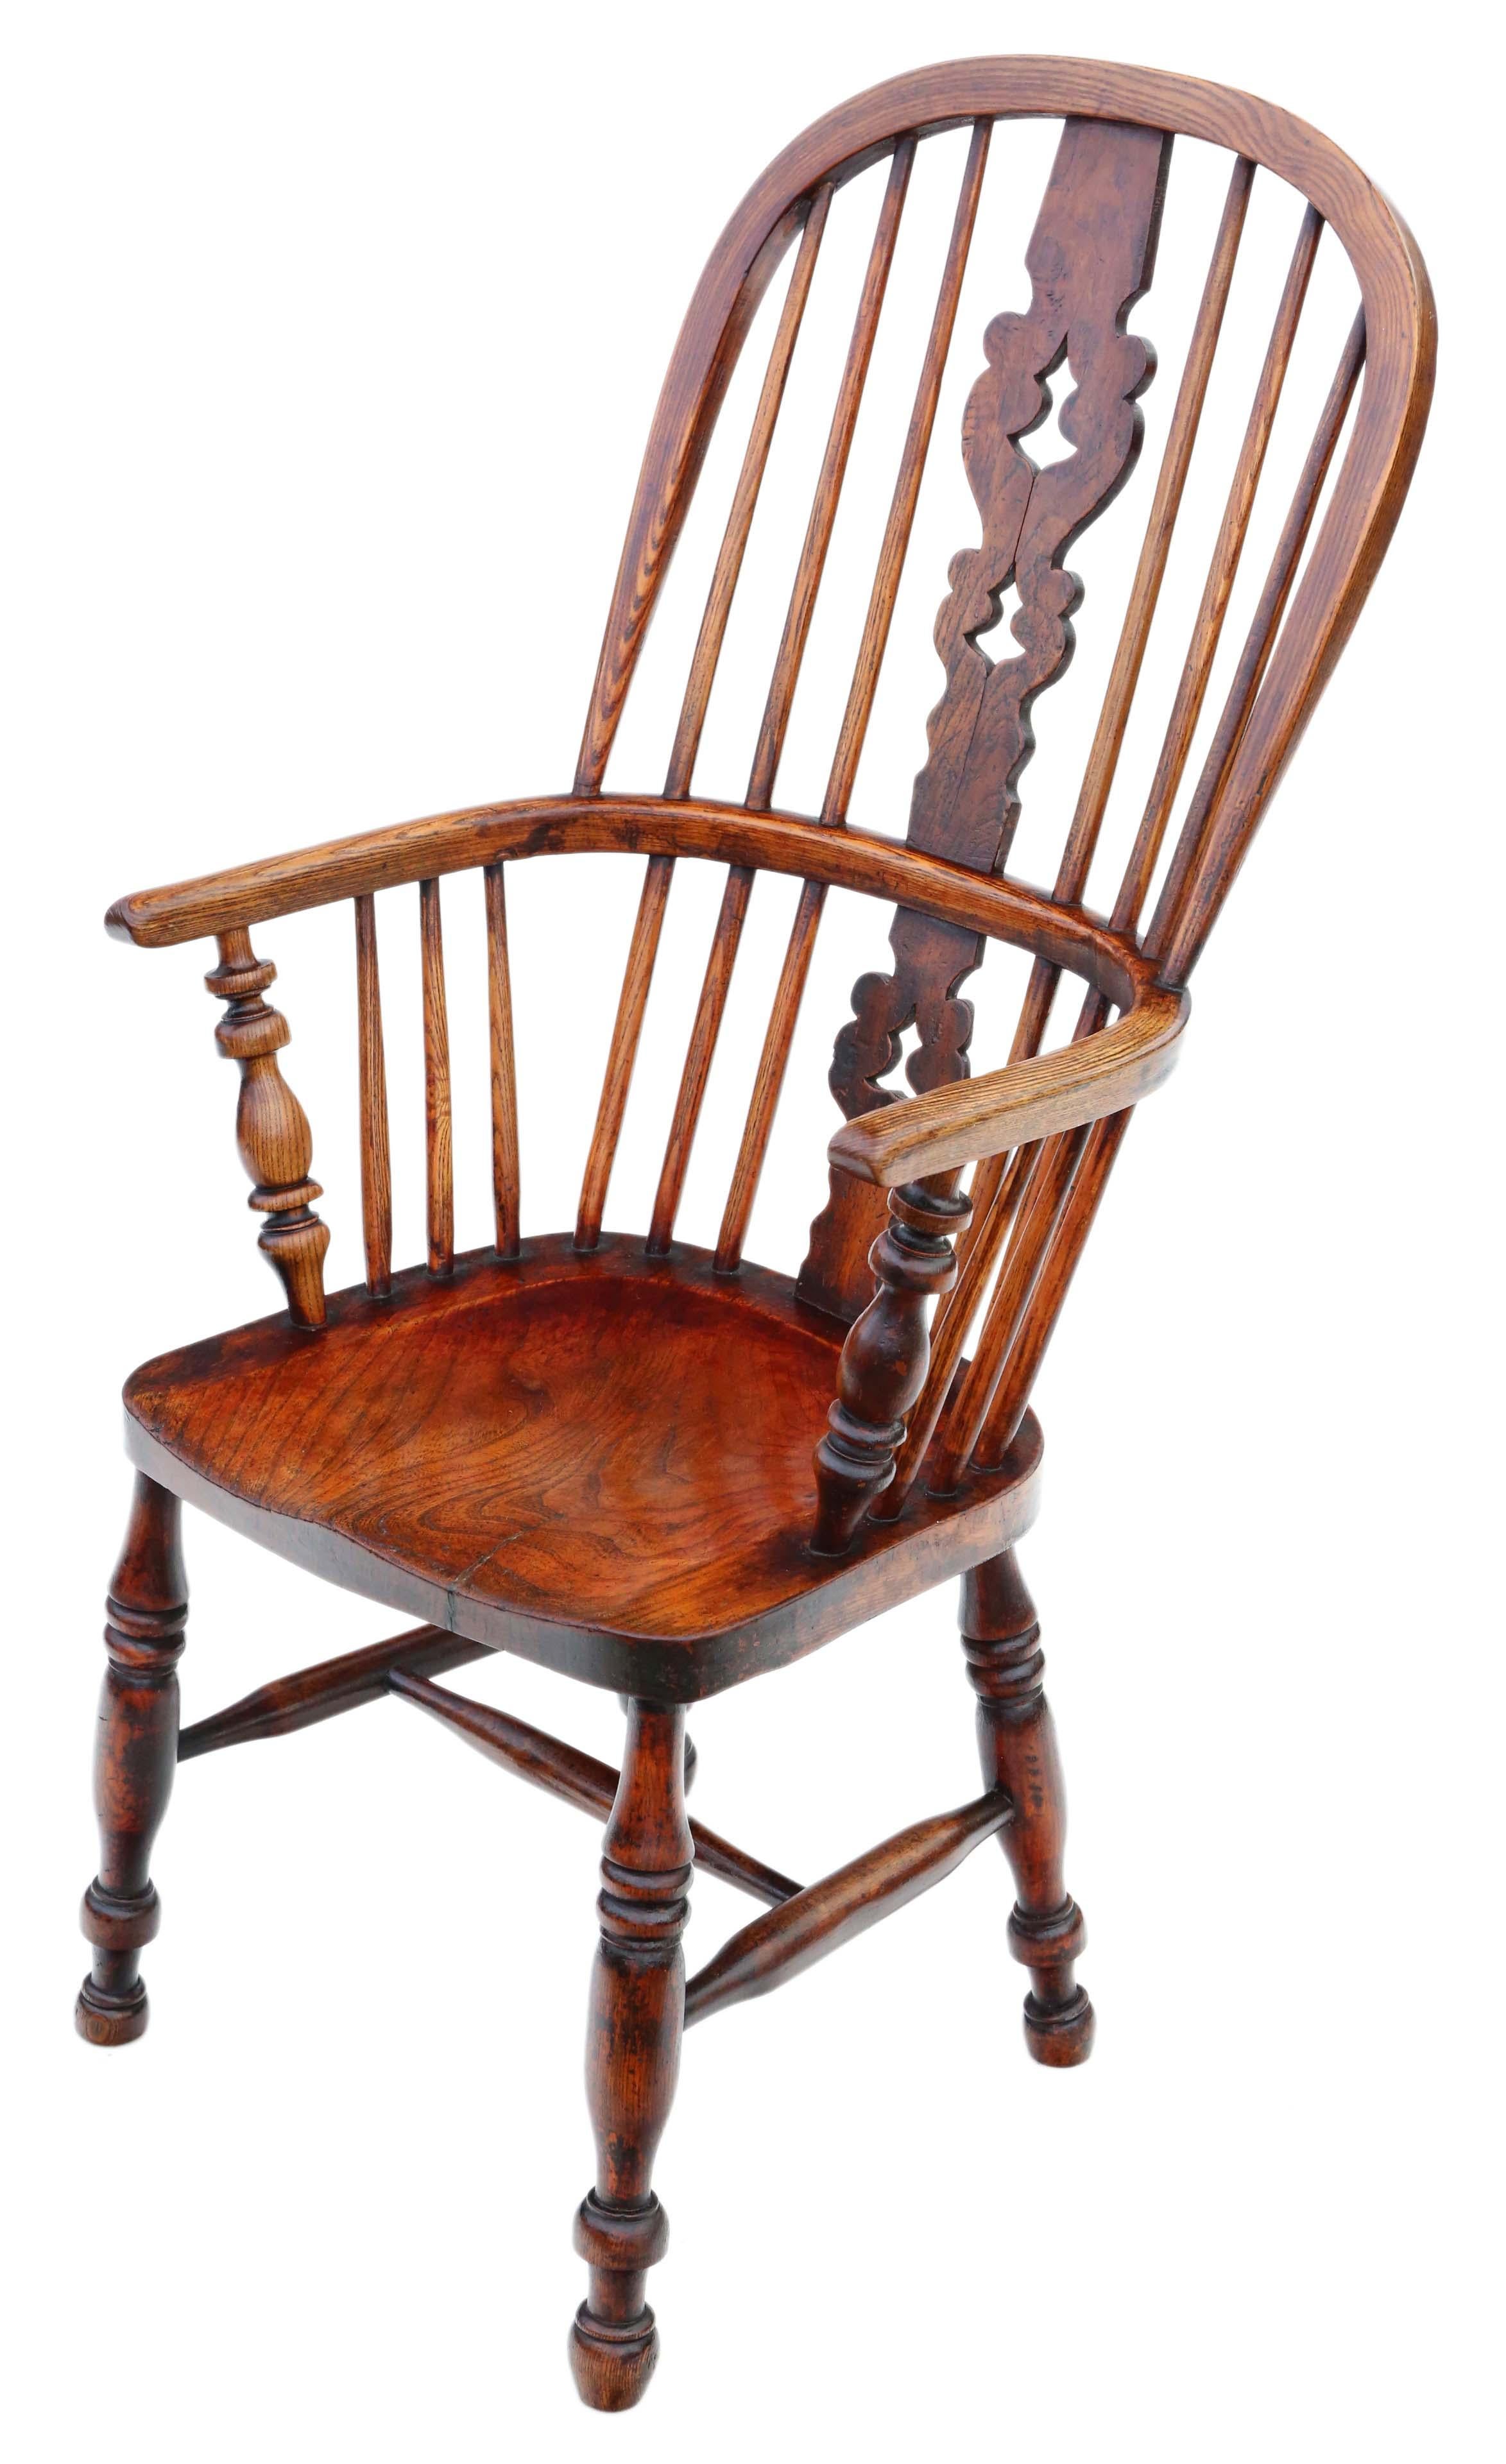 Antike viktorianische C1860 Esche und Ulme Windsor Stuhl Esszimmer Sessel.

Solide und stark, ohne lose Verbindungen und ohne Holzwurm. Voller Alter, Charakter und Charme. Kürzlich zu einem sehr guten Standard restauriert.

An der richtigen